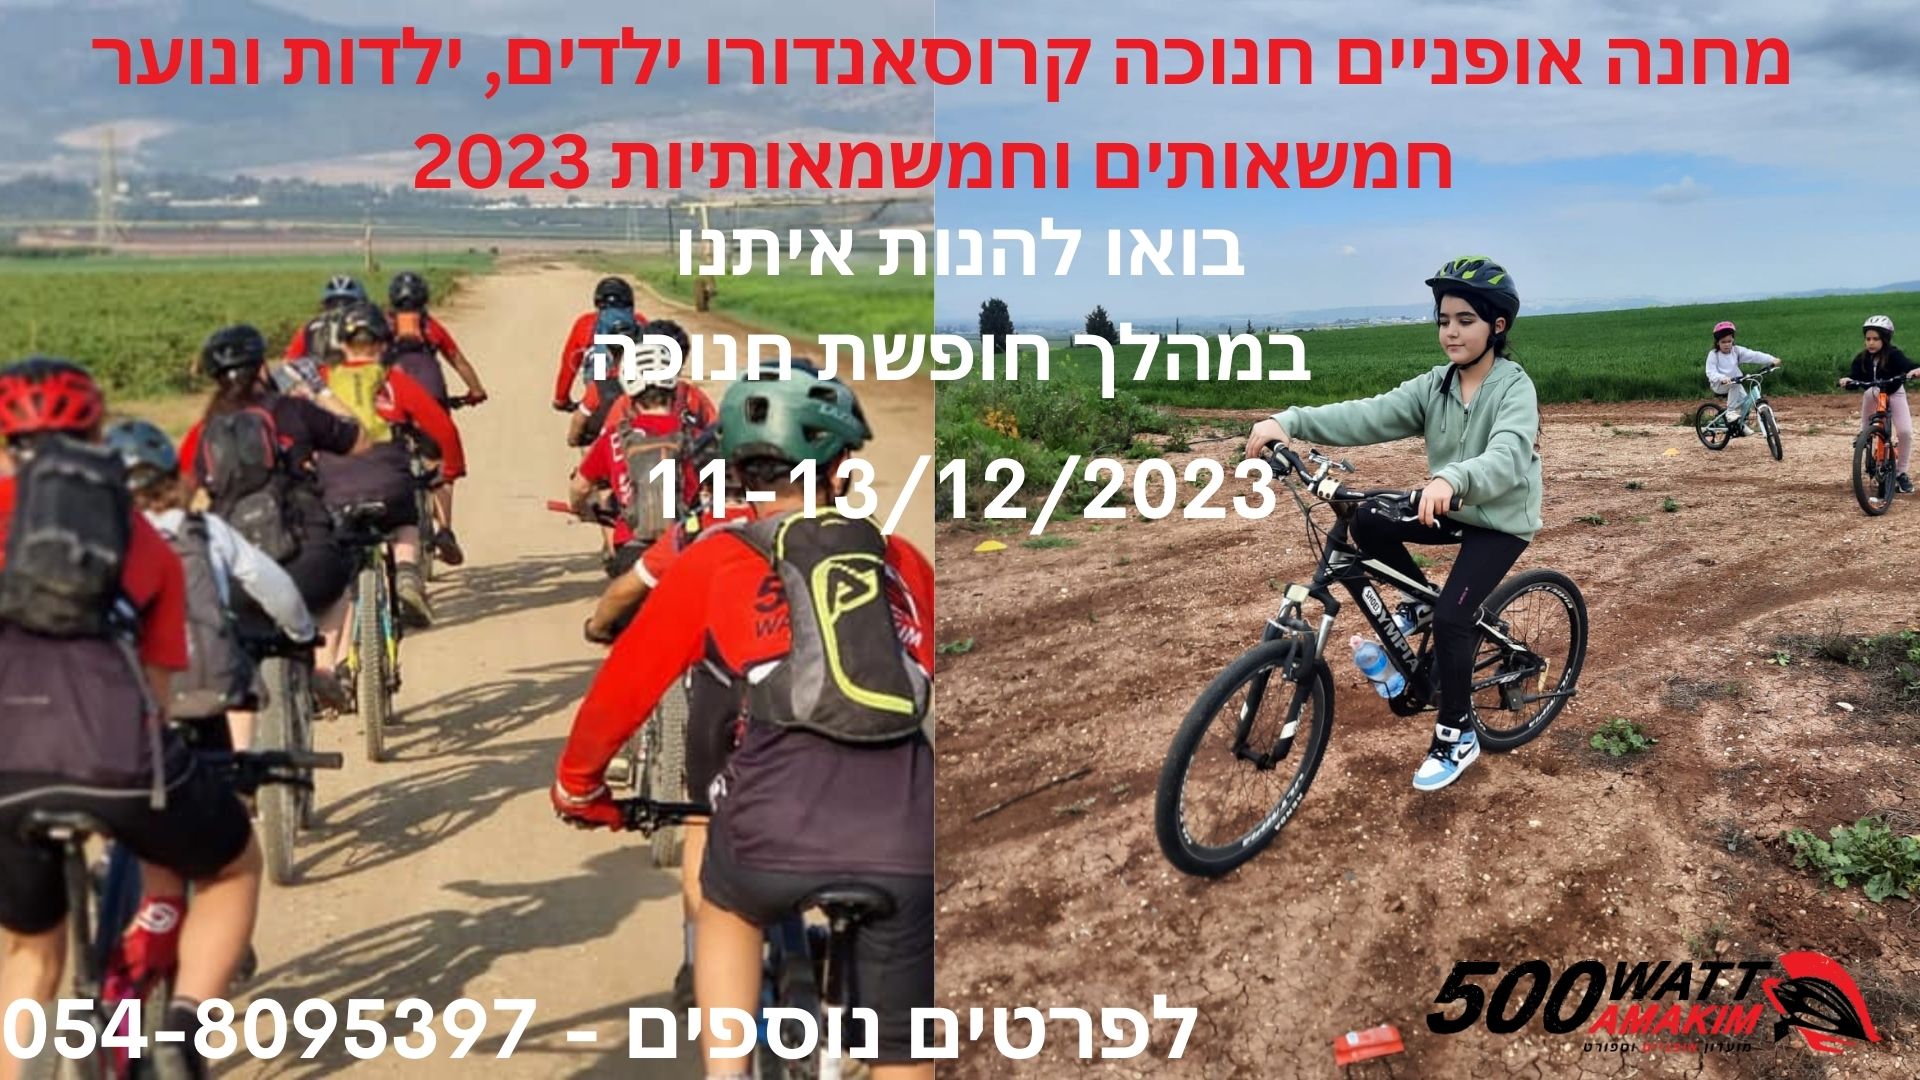 מחנה אופניים חנוכה קרוסאנדורו ילדים ,ילדות ונוער-חמשאותים וחמשמאותיות 2023